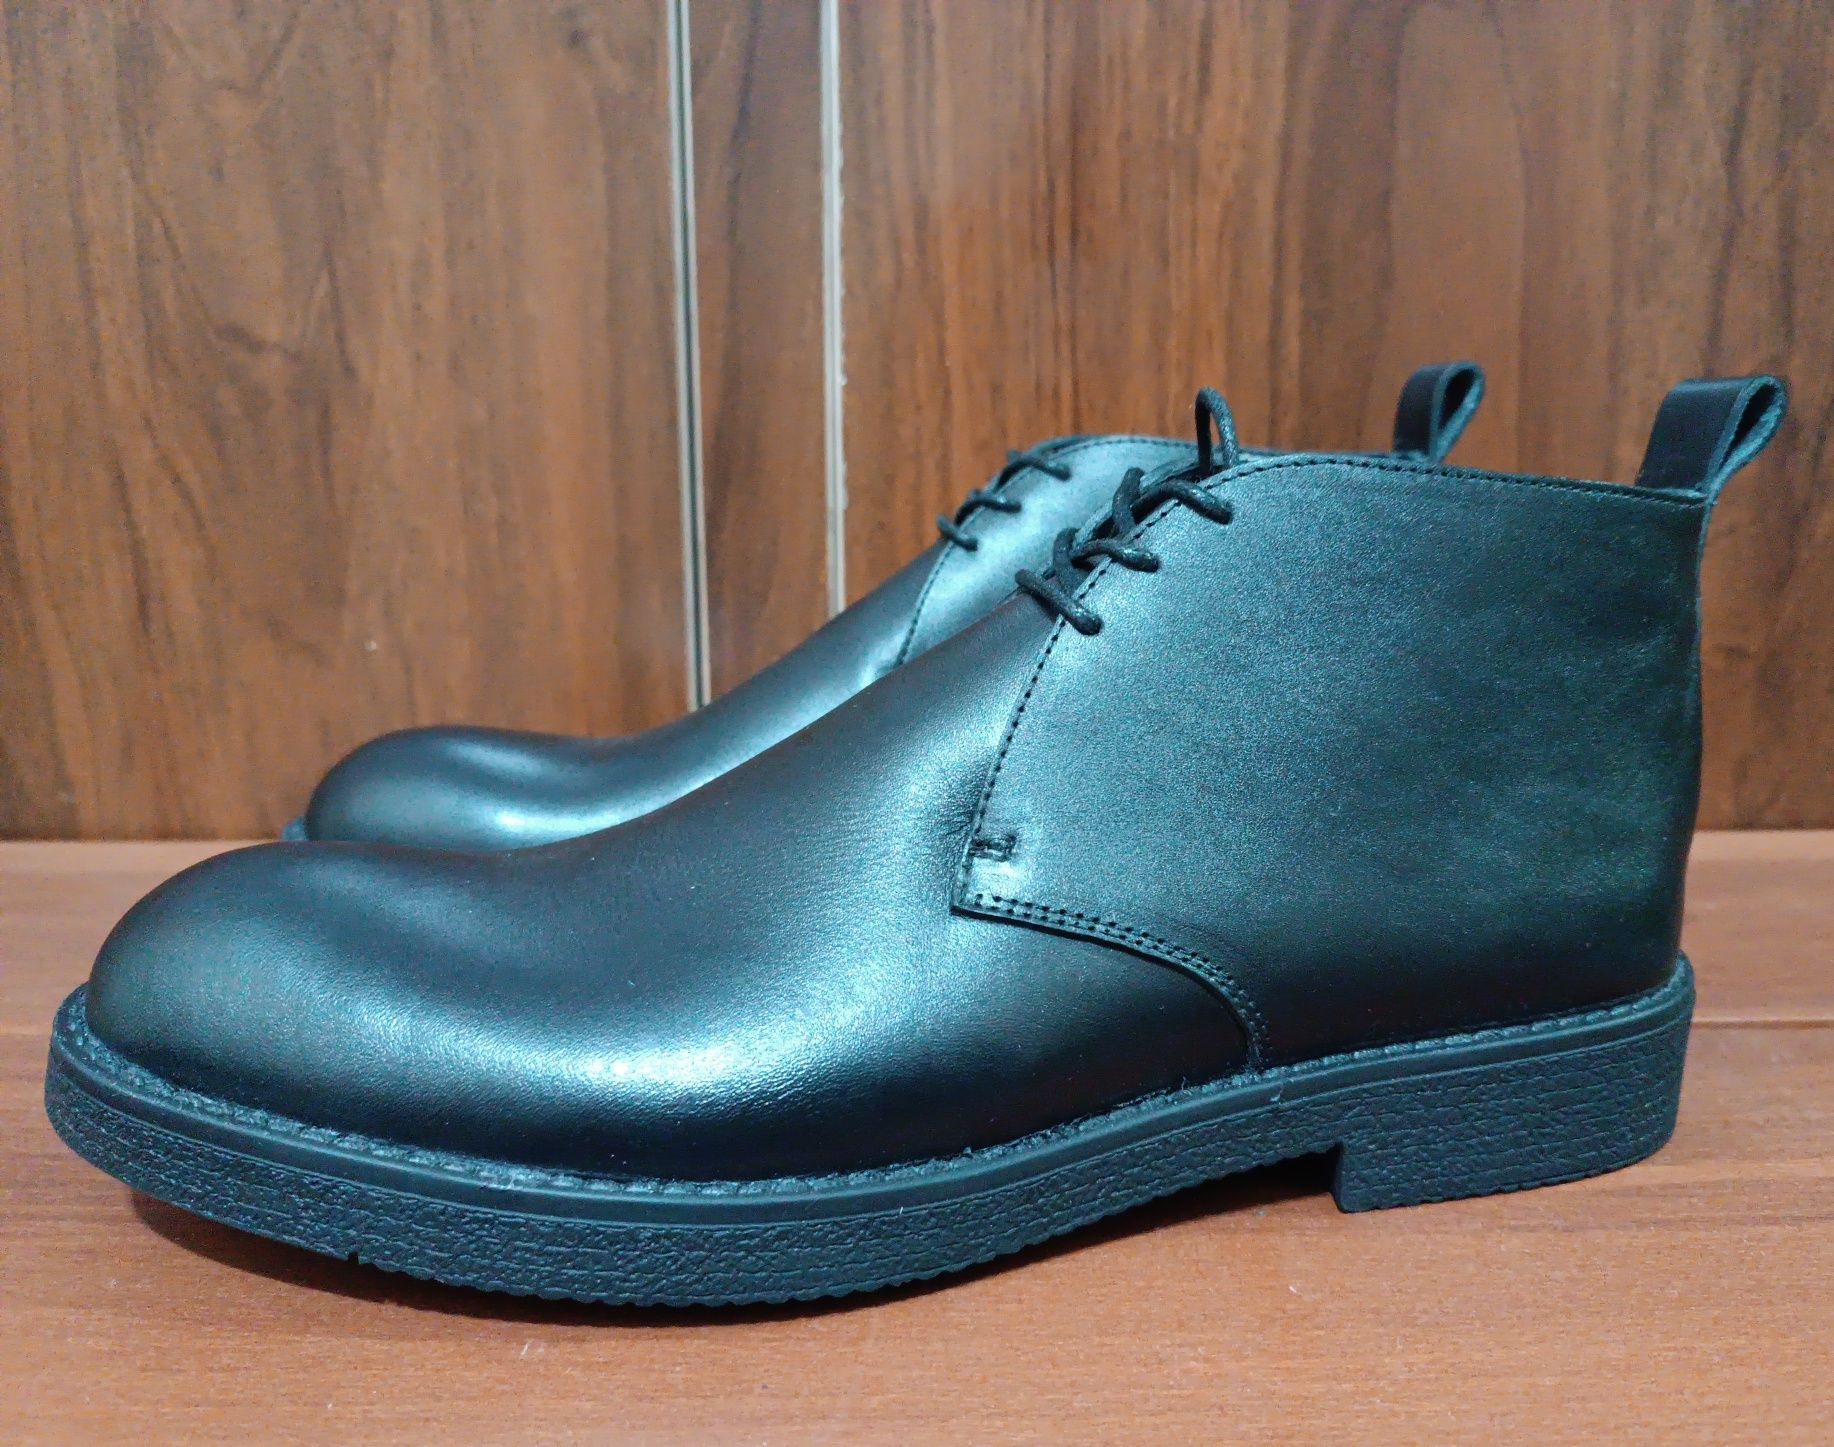 Leather Chukka boots